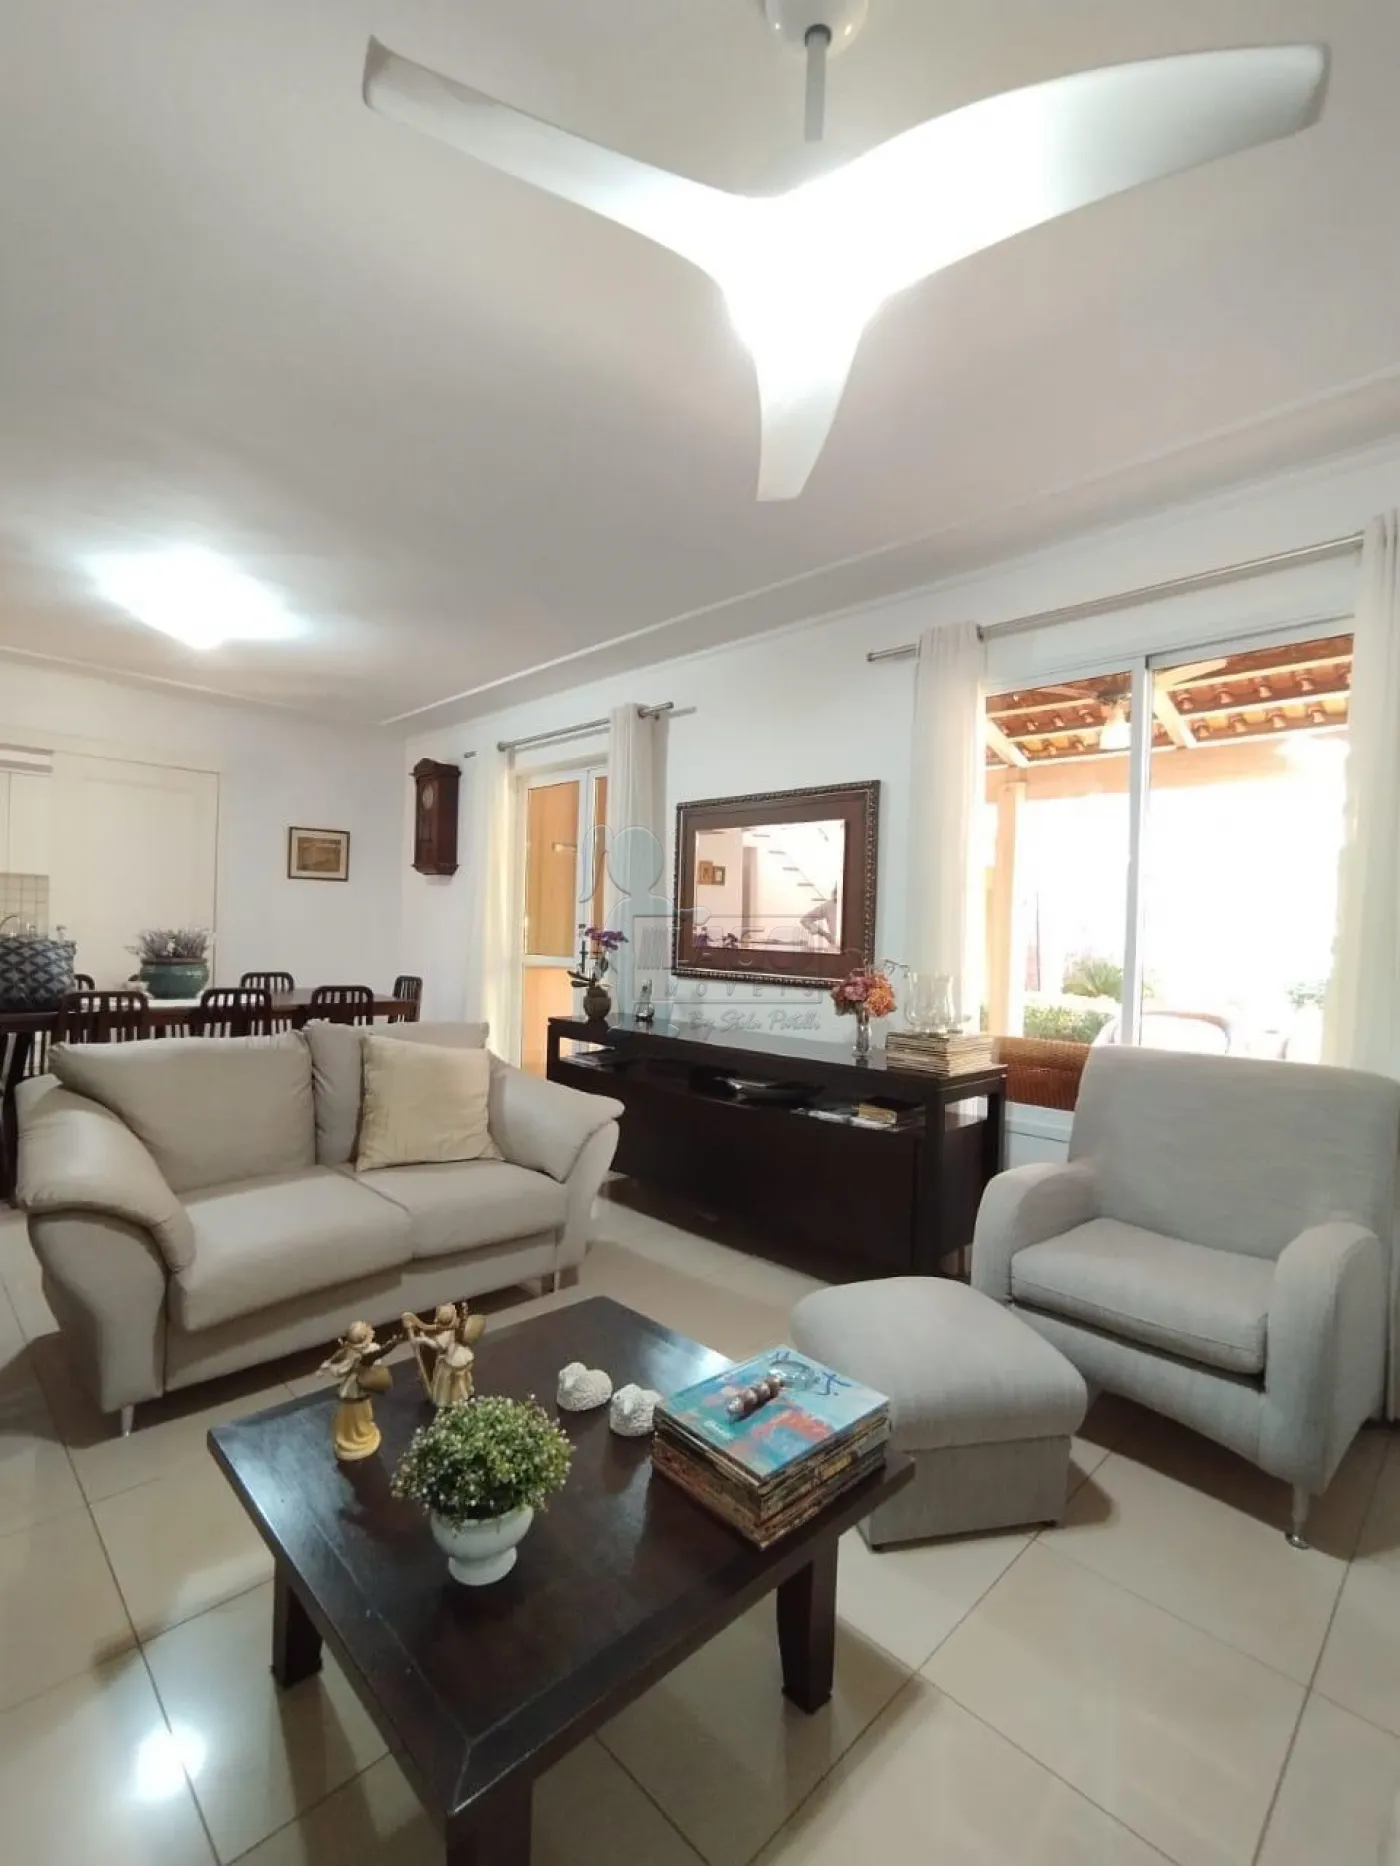 Comprar Casa condomínio / Padrão em Ribeirão Preto R$ 1.300.000,00 - Foto 21